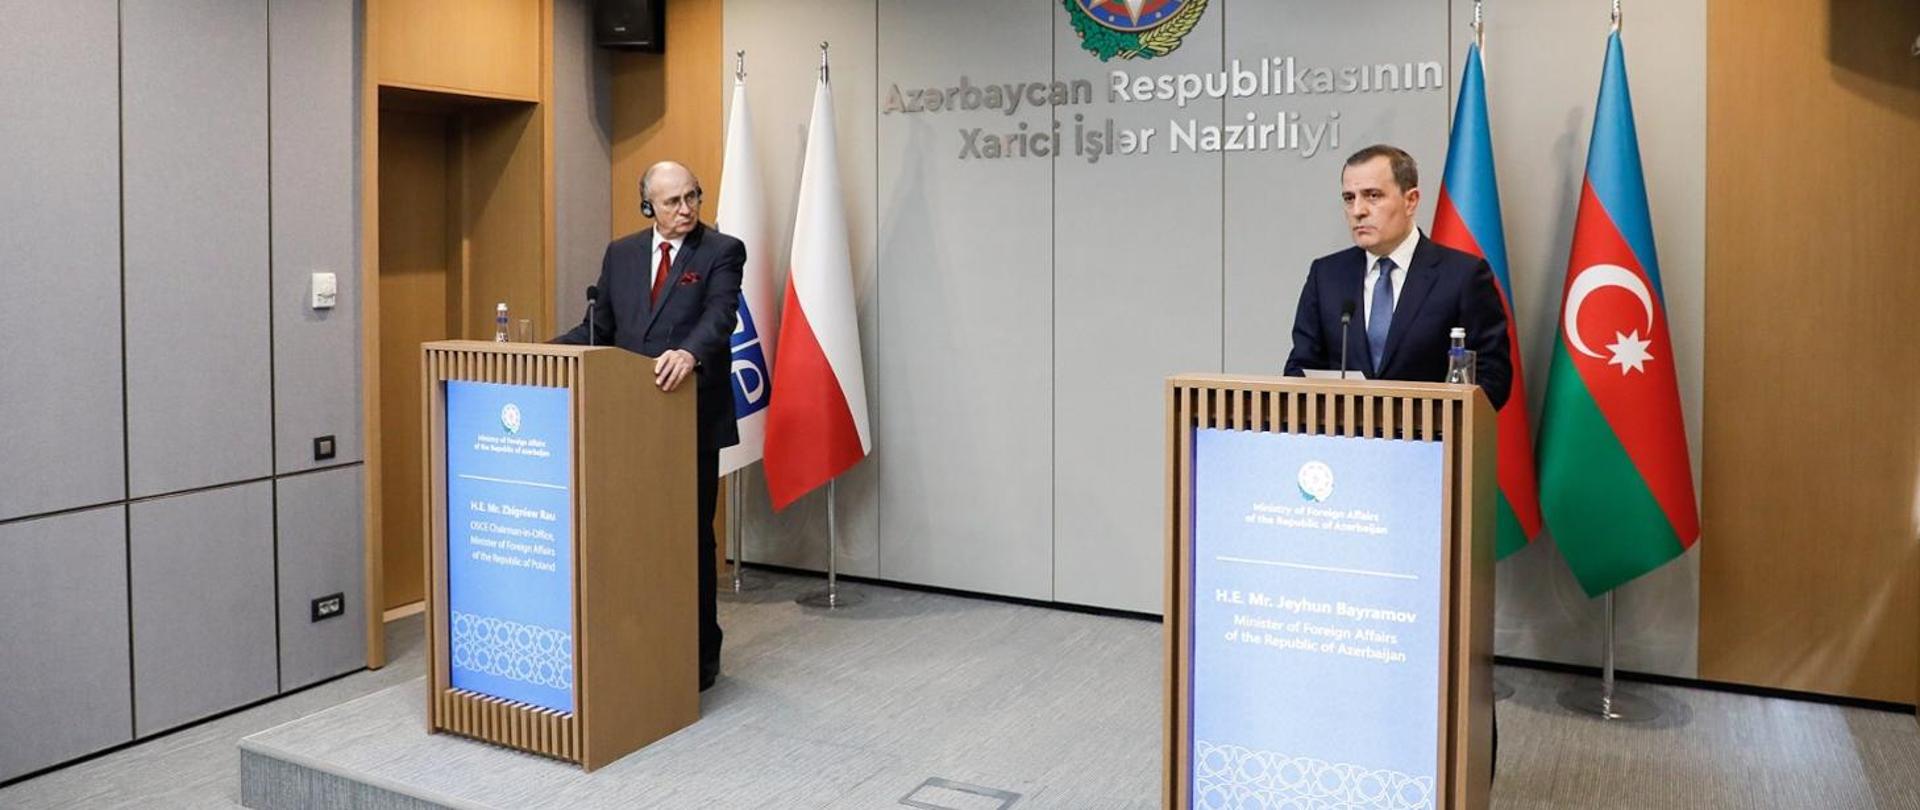 Konferencja prasowa MSZ Polski i Azerbejdżanu